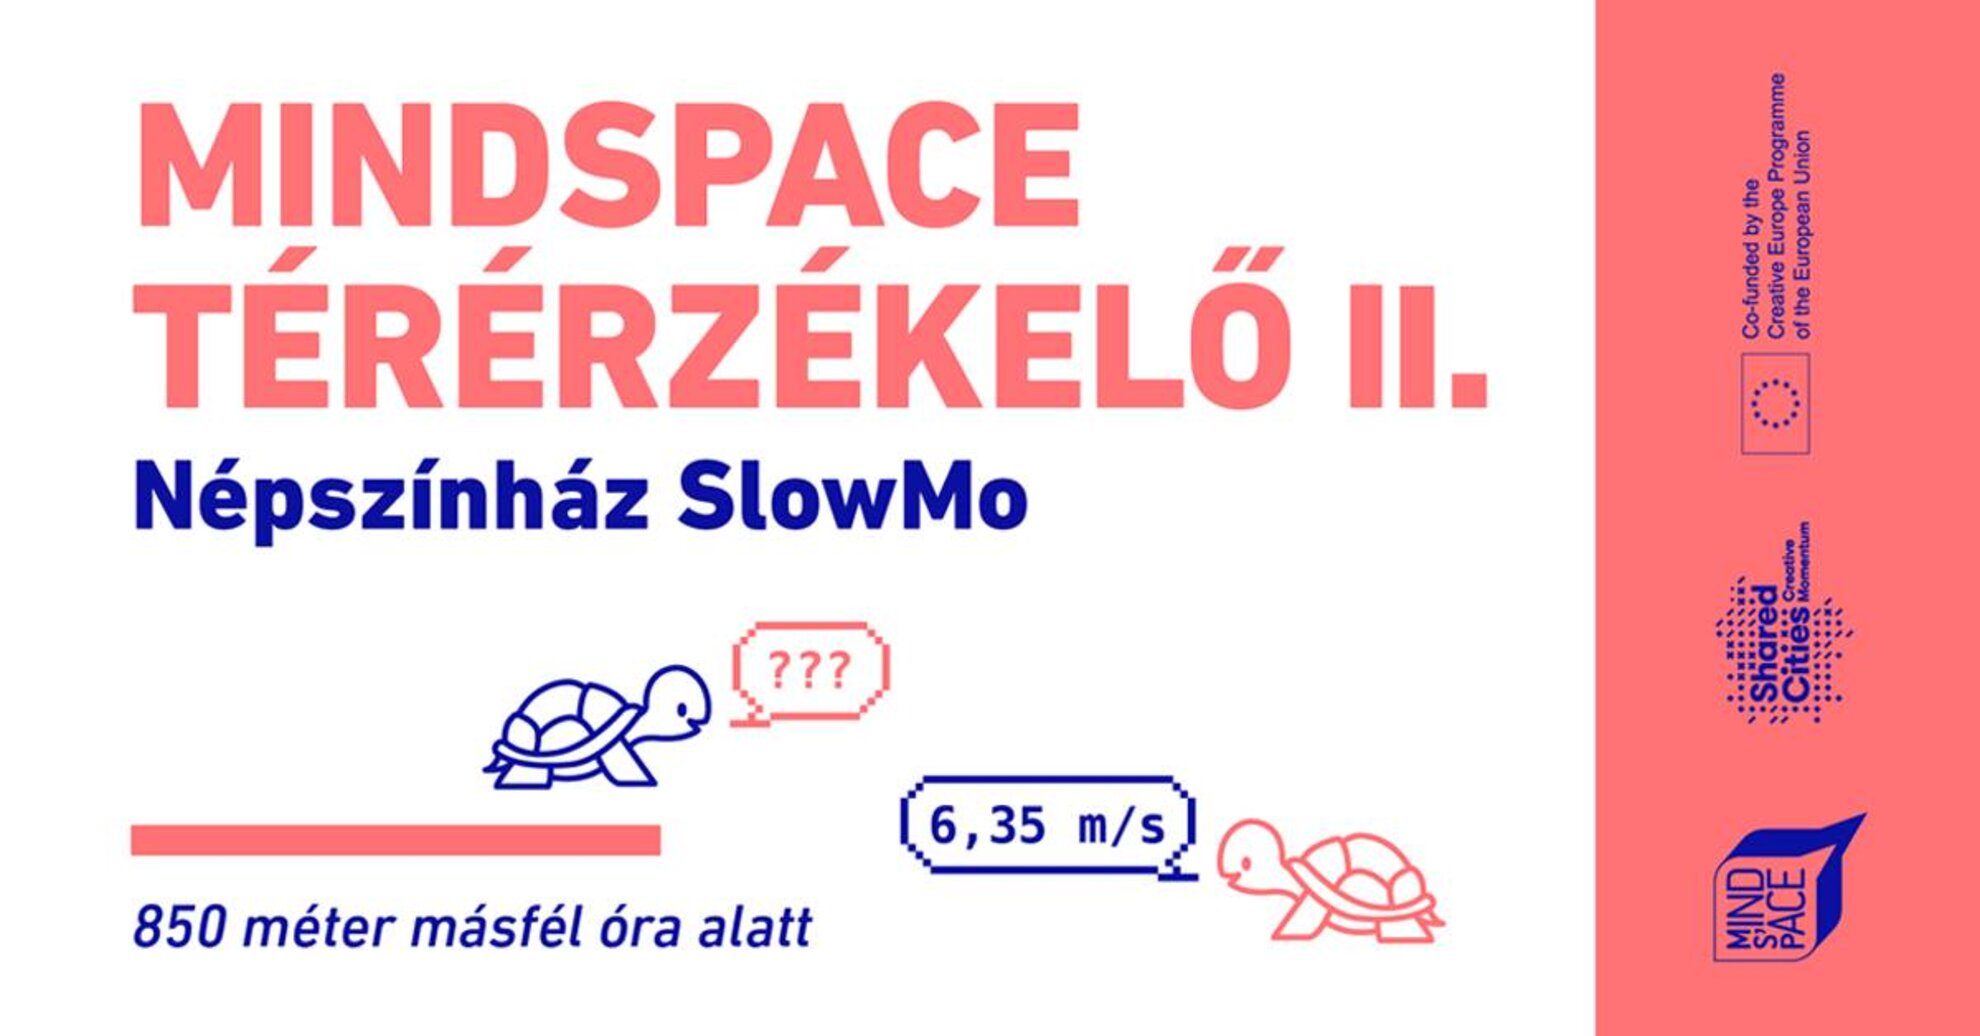 Mindspace Térérzékelő II. - Népszínház SlowMo